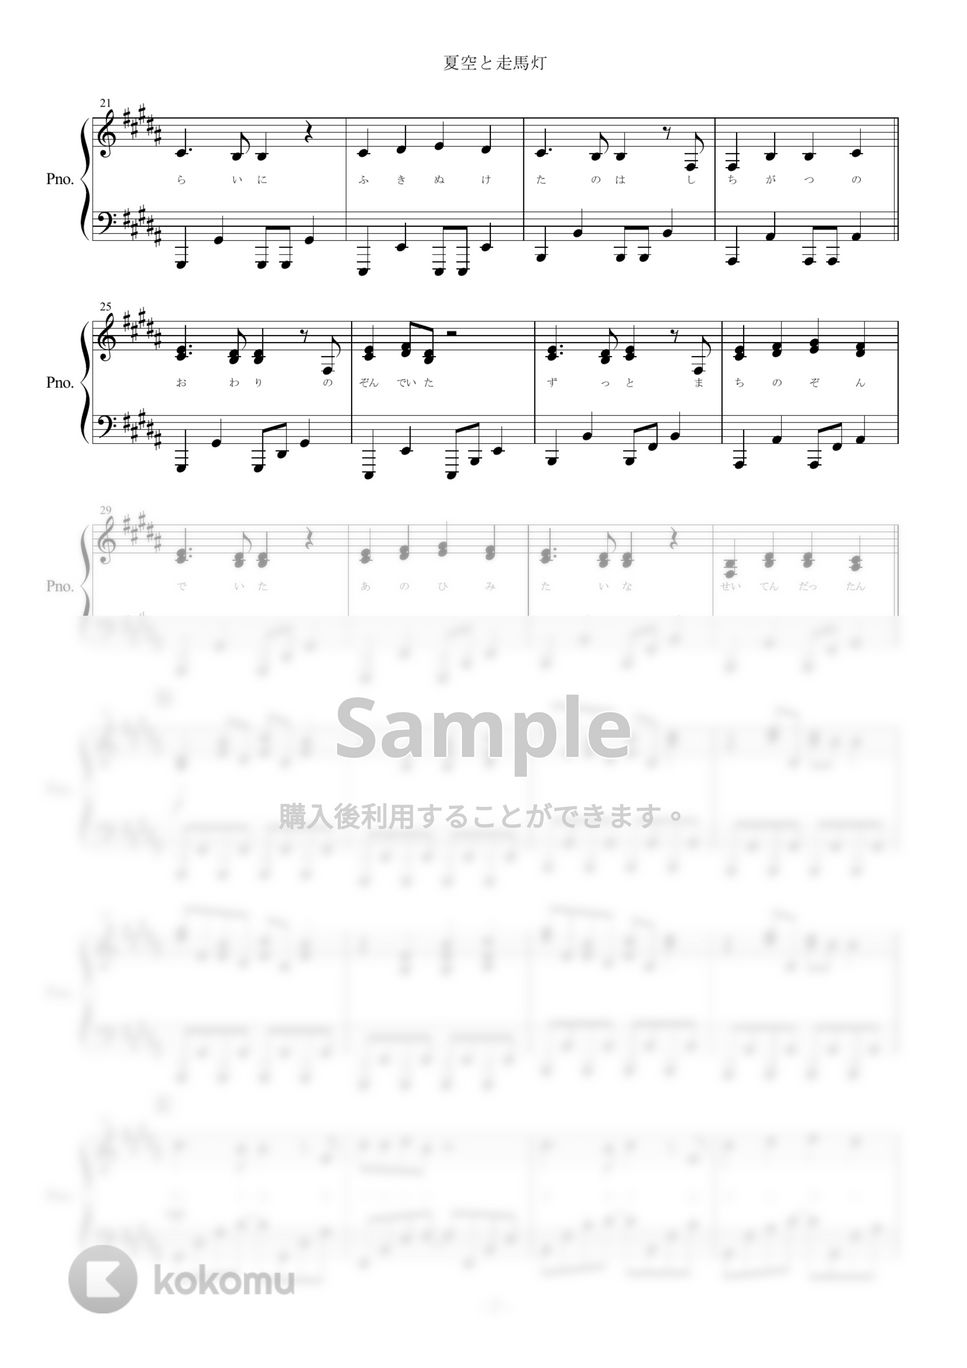 After the Rain（そらる×まふまふ） - 夏空と走馬灯 (ピアノ楽譜（全８ページ）) by yoshi